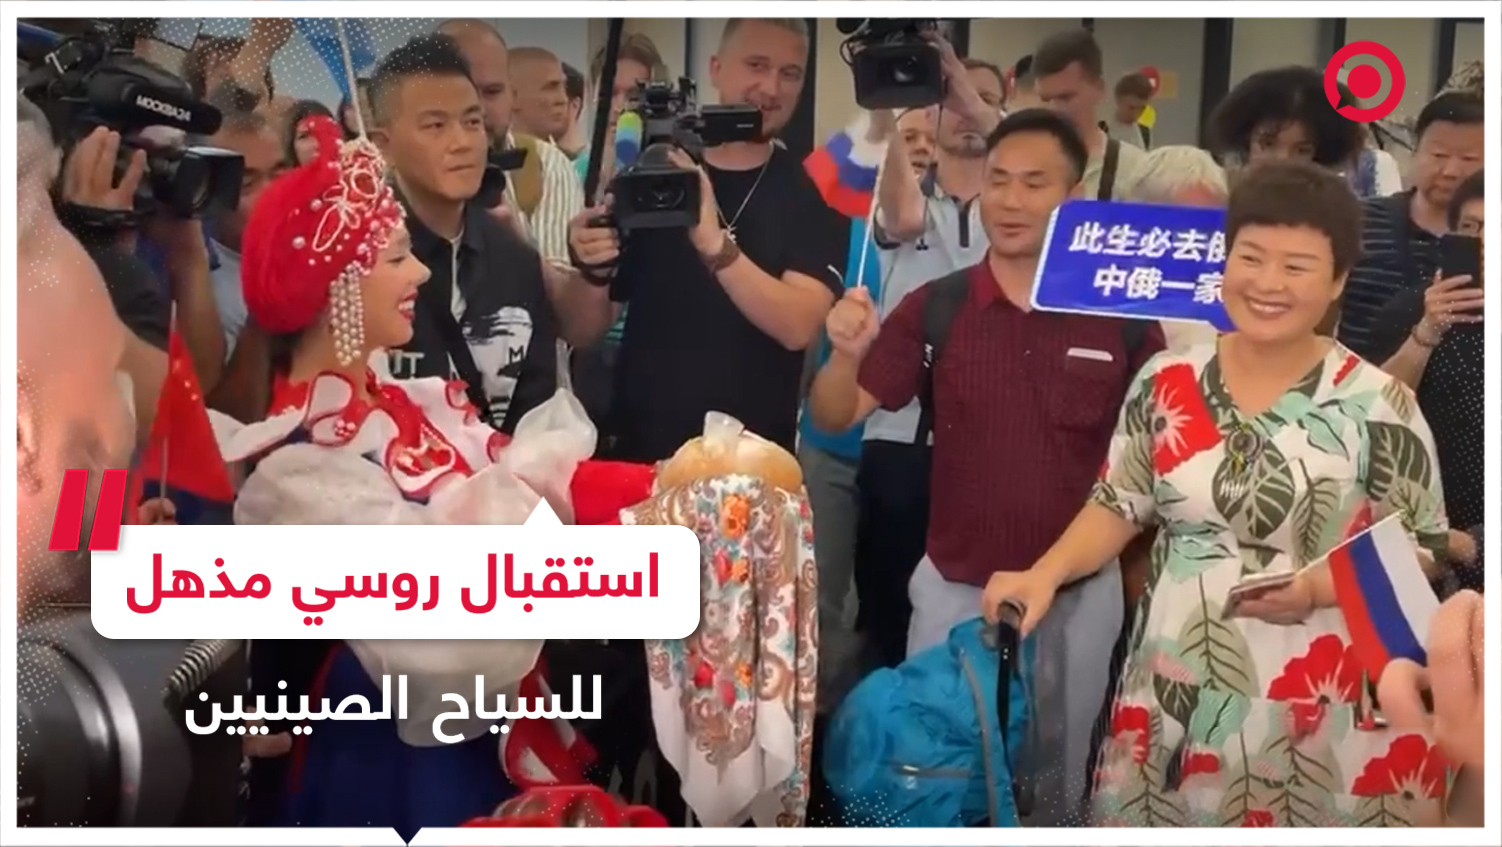 أول سياح صينيين يصلون روسيا بعد الإعفاء من التأشيرات